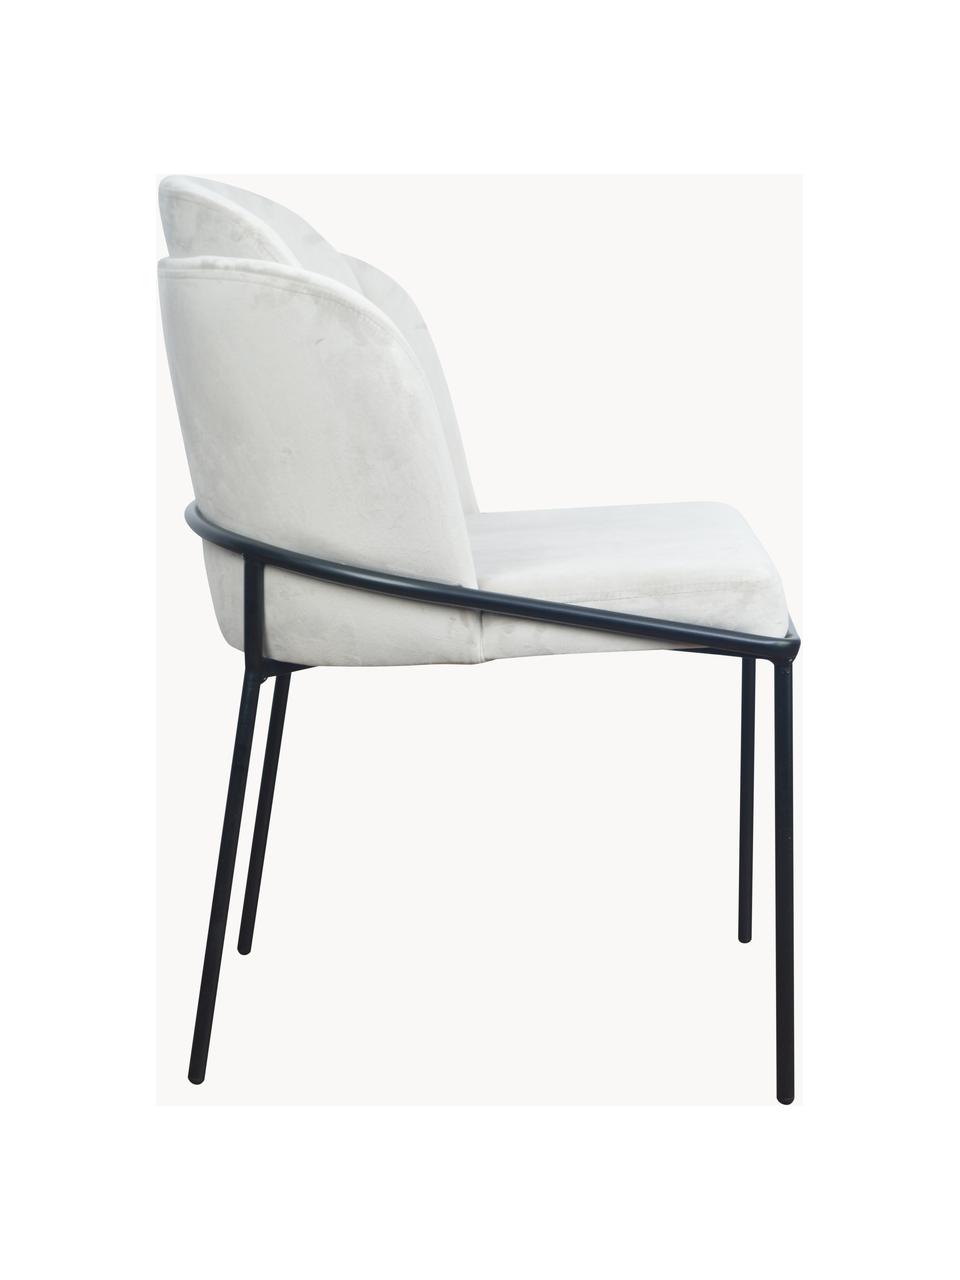 Krzesło tapicerowane z aksamitu Polly, Tapicerka: aksamit (100% poliester), Nogi: metal, Kremowobiały aksamit, S 57 x G 55 cm